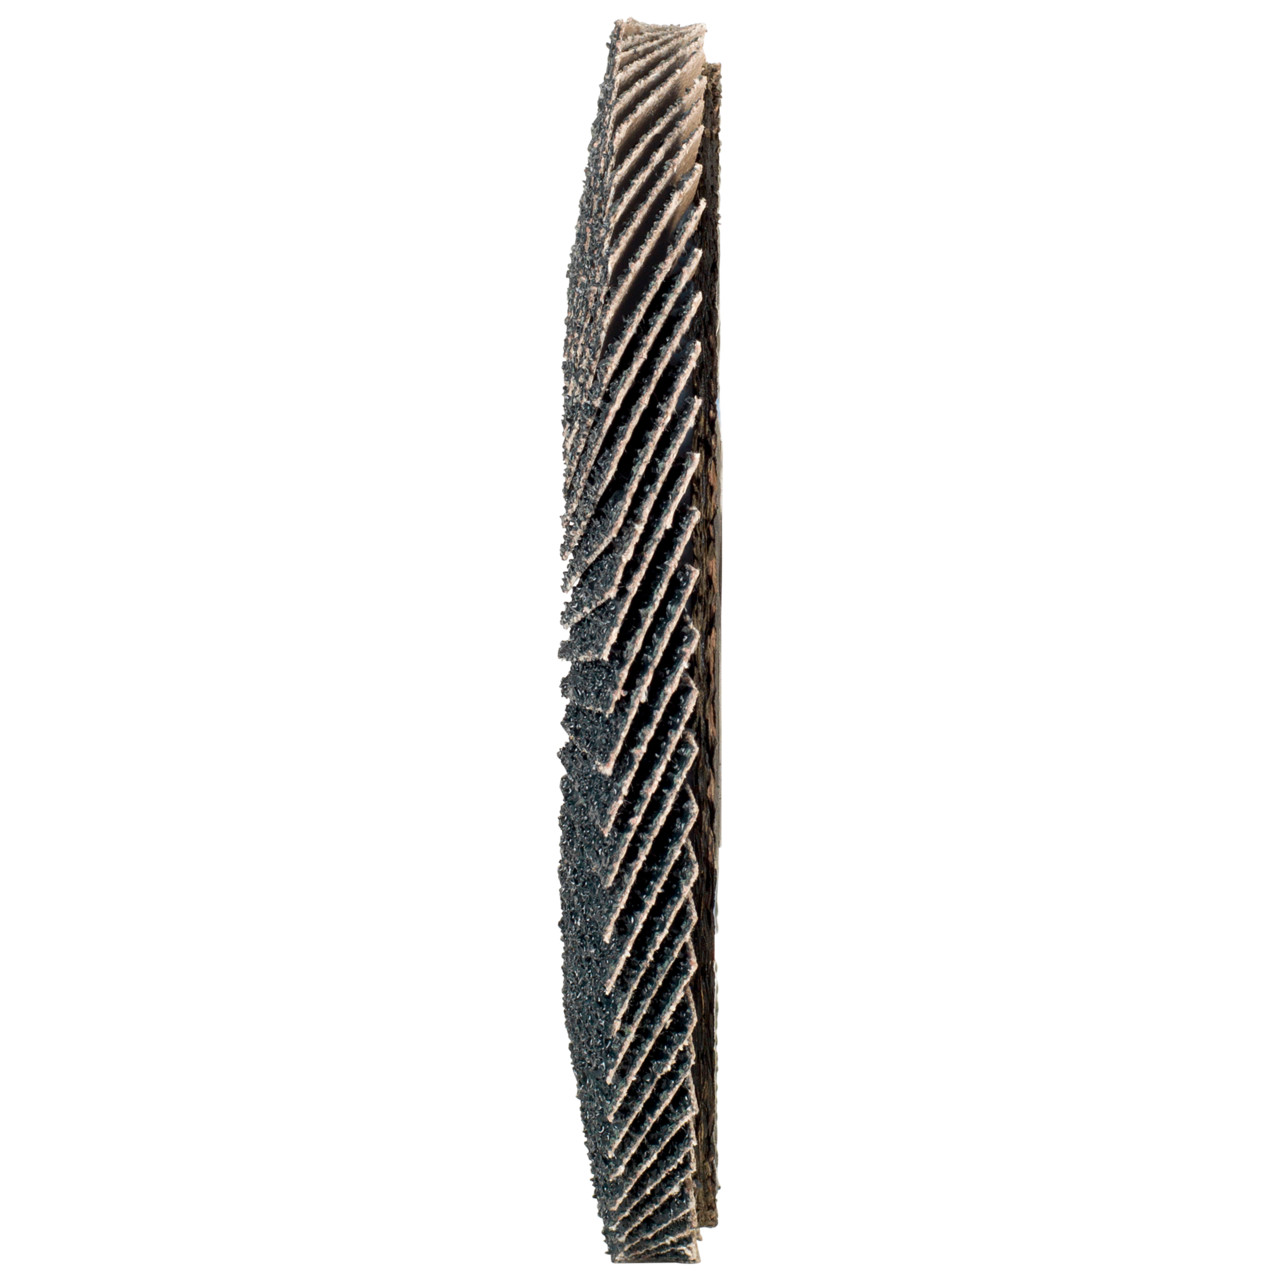 Tyrolit Arandela dentada DxH 115x22,2 2en1 para acero y acero inoxidable, P60, forma: 27A - versión desplazada (versión con cuerpo de soporte de fibra de vidrio), Art. 668644